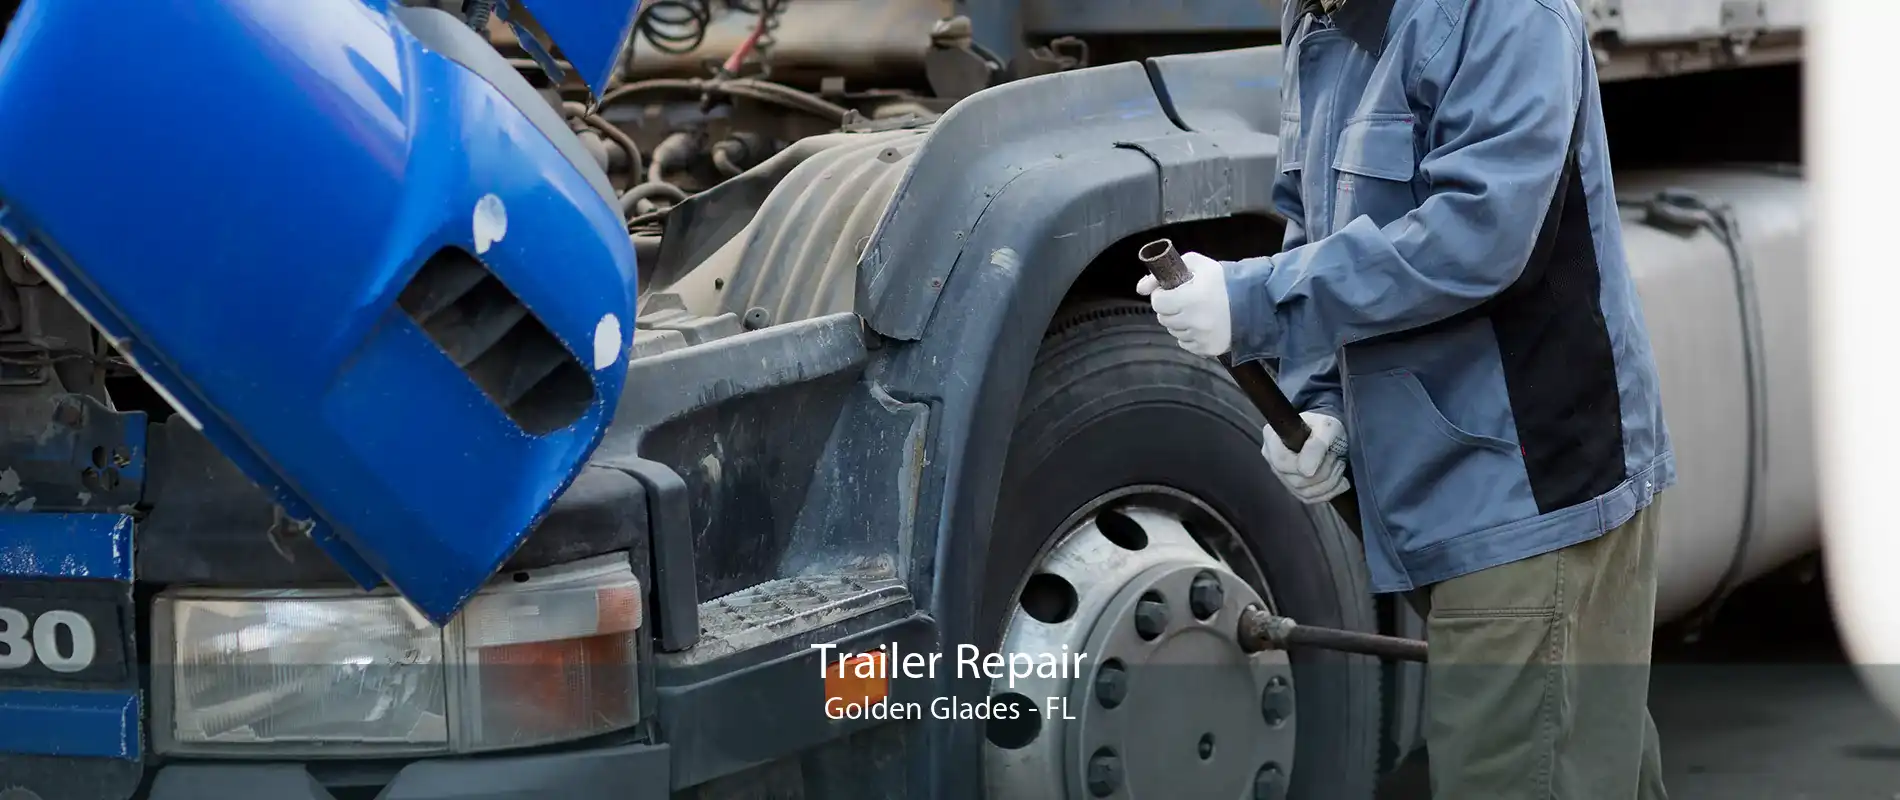 Trailer Repair Golden Glades - FL